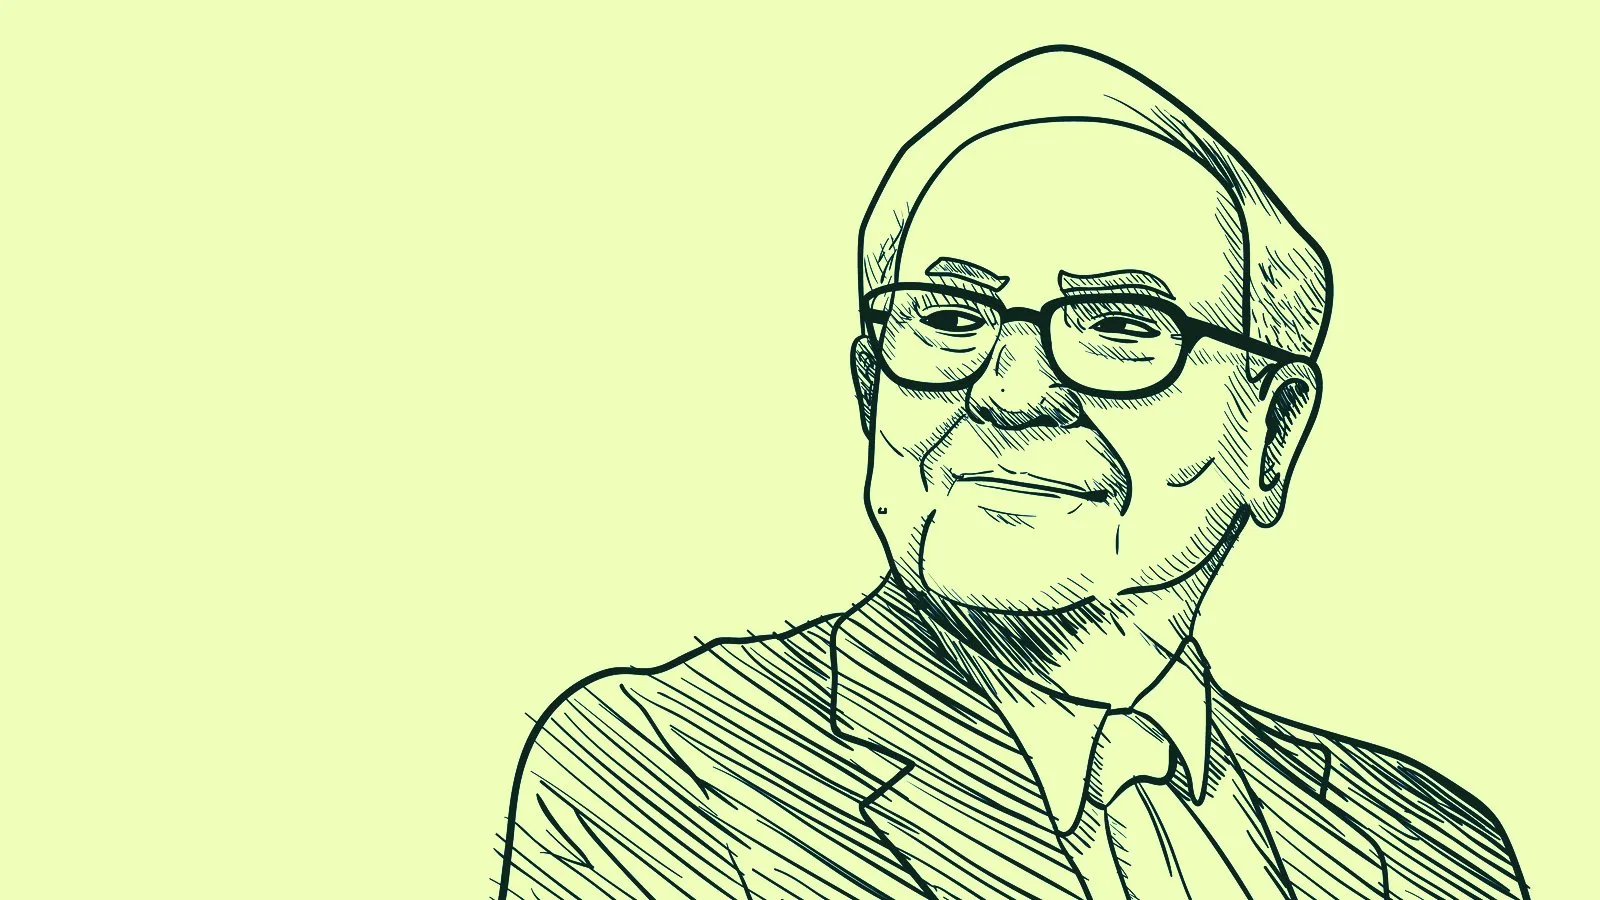 Warren Buffett dijo a los inversores que tuvieran fe, porque siempre la ha tenido, pero dijo que su empresa no ha visto ninguna oportunidad atractiva para invertir todavía. Imagen: Shutterstock